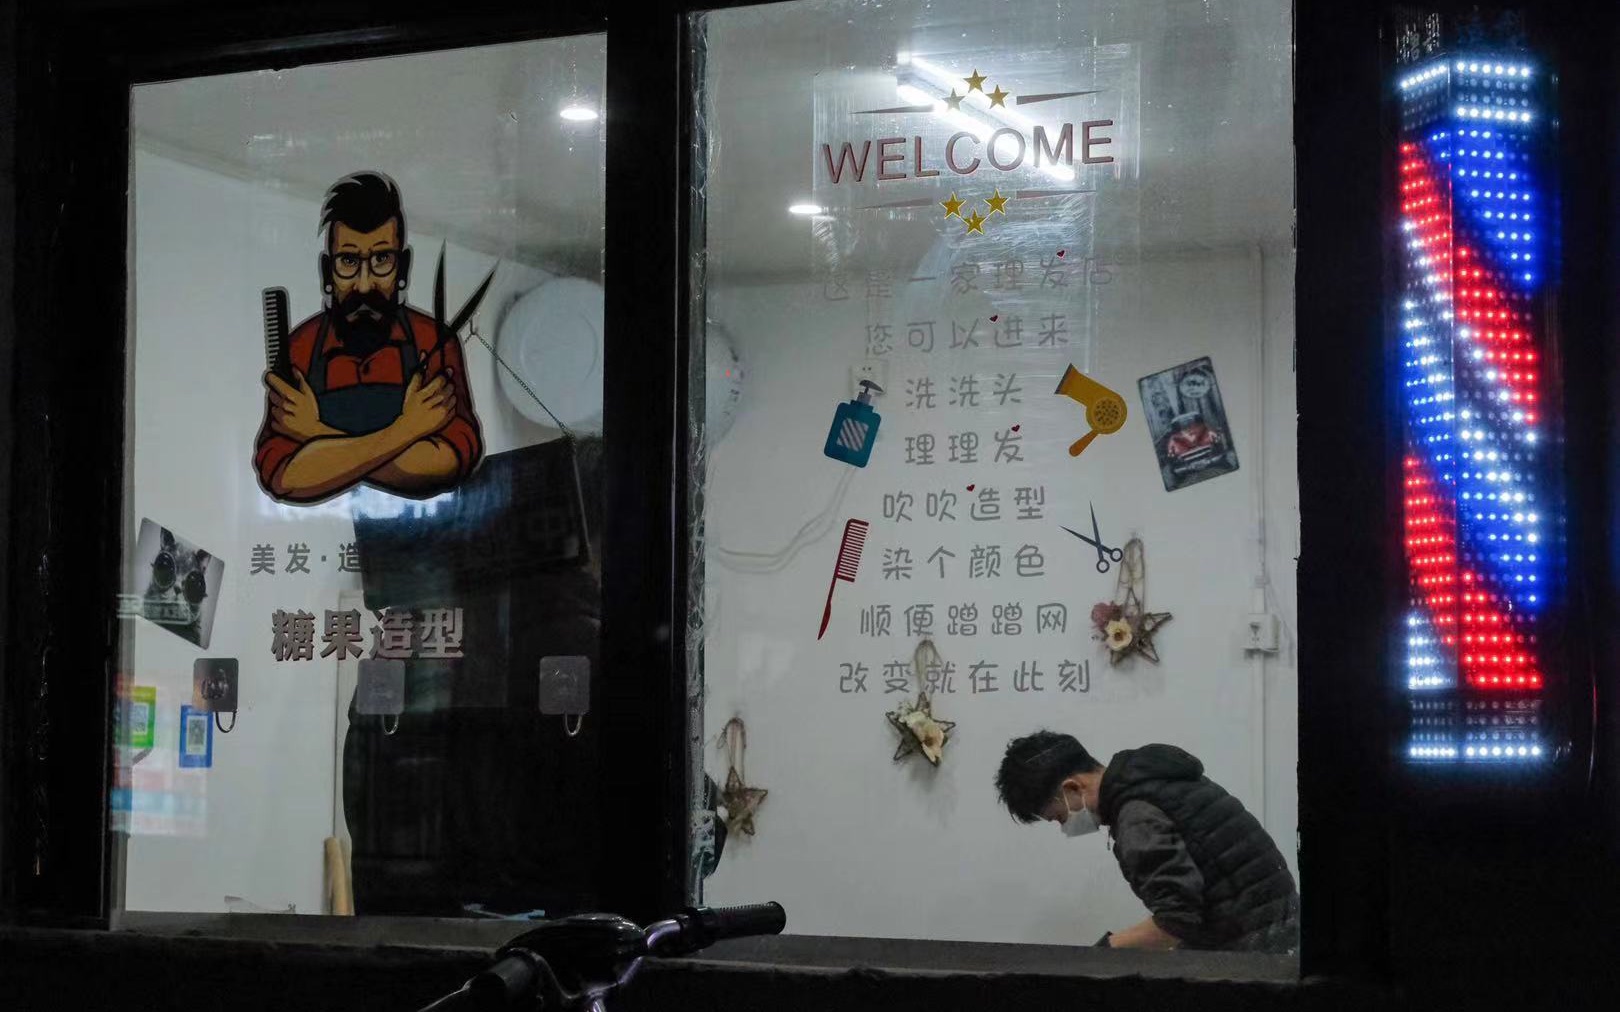 定福庄园艺场的理发店已恢复正常营业。新京报记者 王子诚 摄